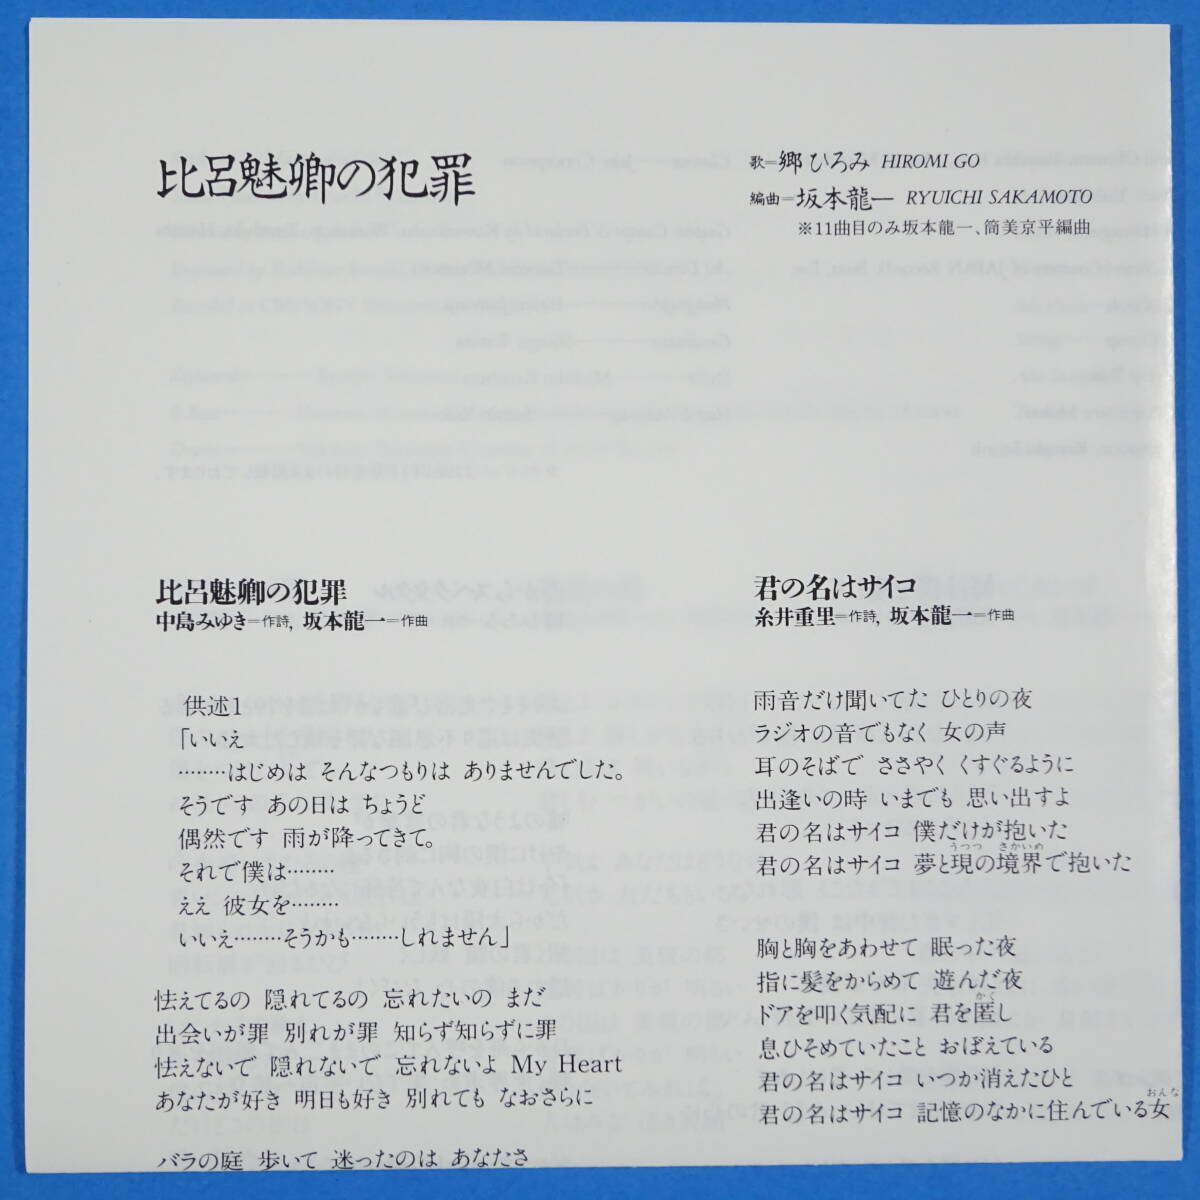 CD Go Hiromi / соотношение .... преступление 2005 год записано в Японии 20 листов глаз. альбом звук производить / Sakamoto Ryuichi 